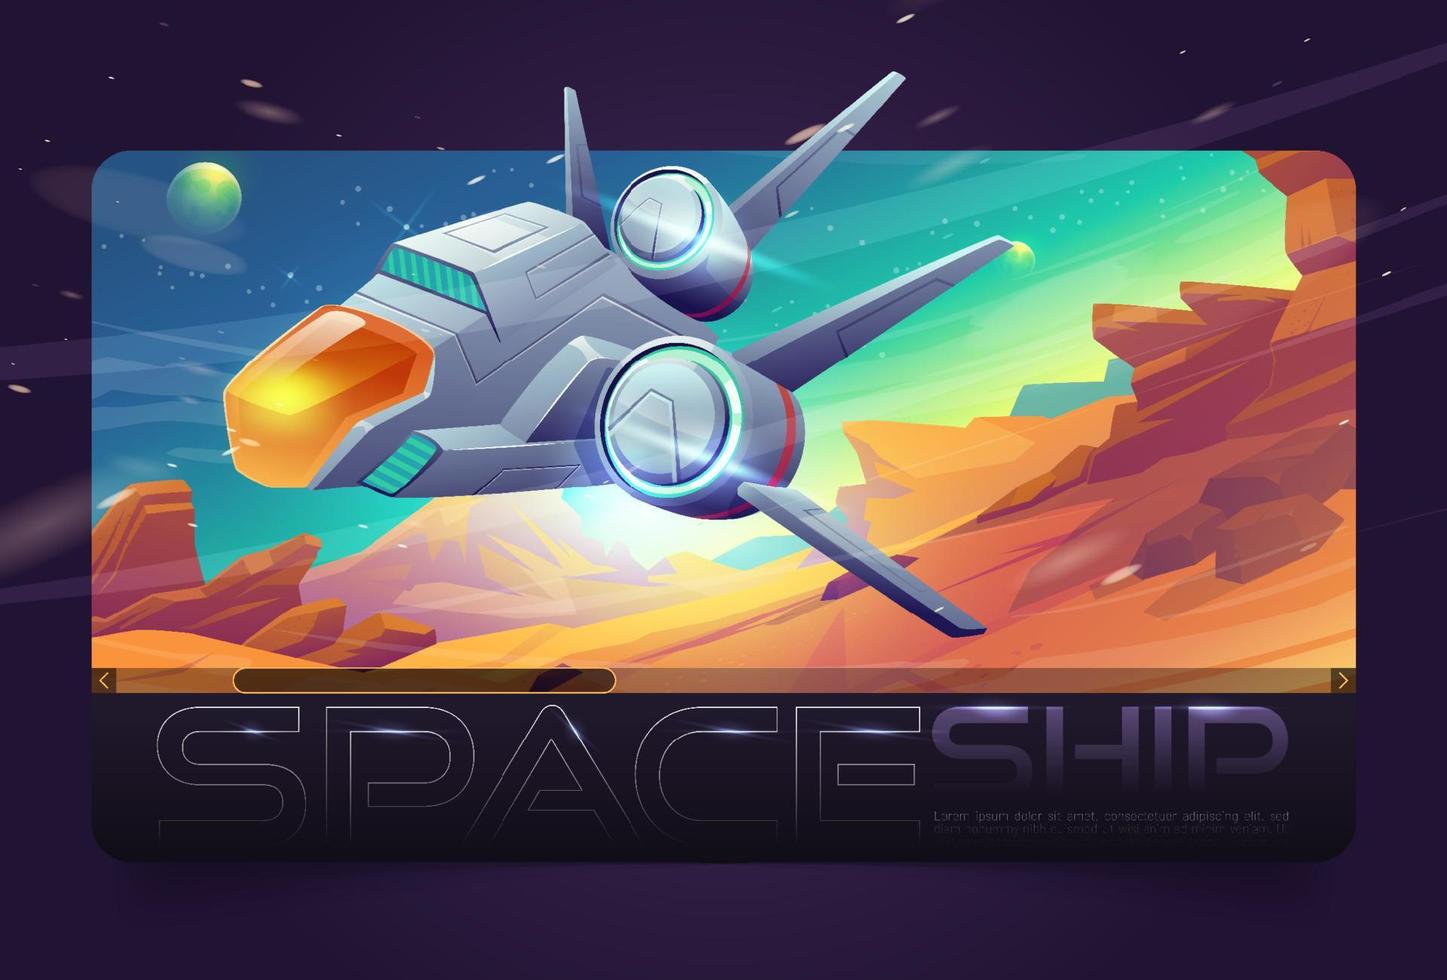 nave espacial de dibujos animados volando fondo de planeta alienígena vector